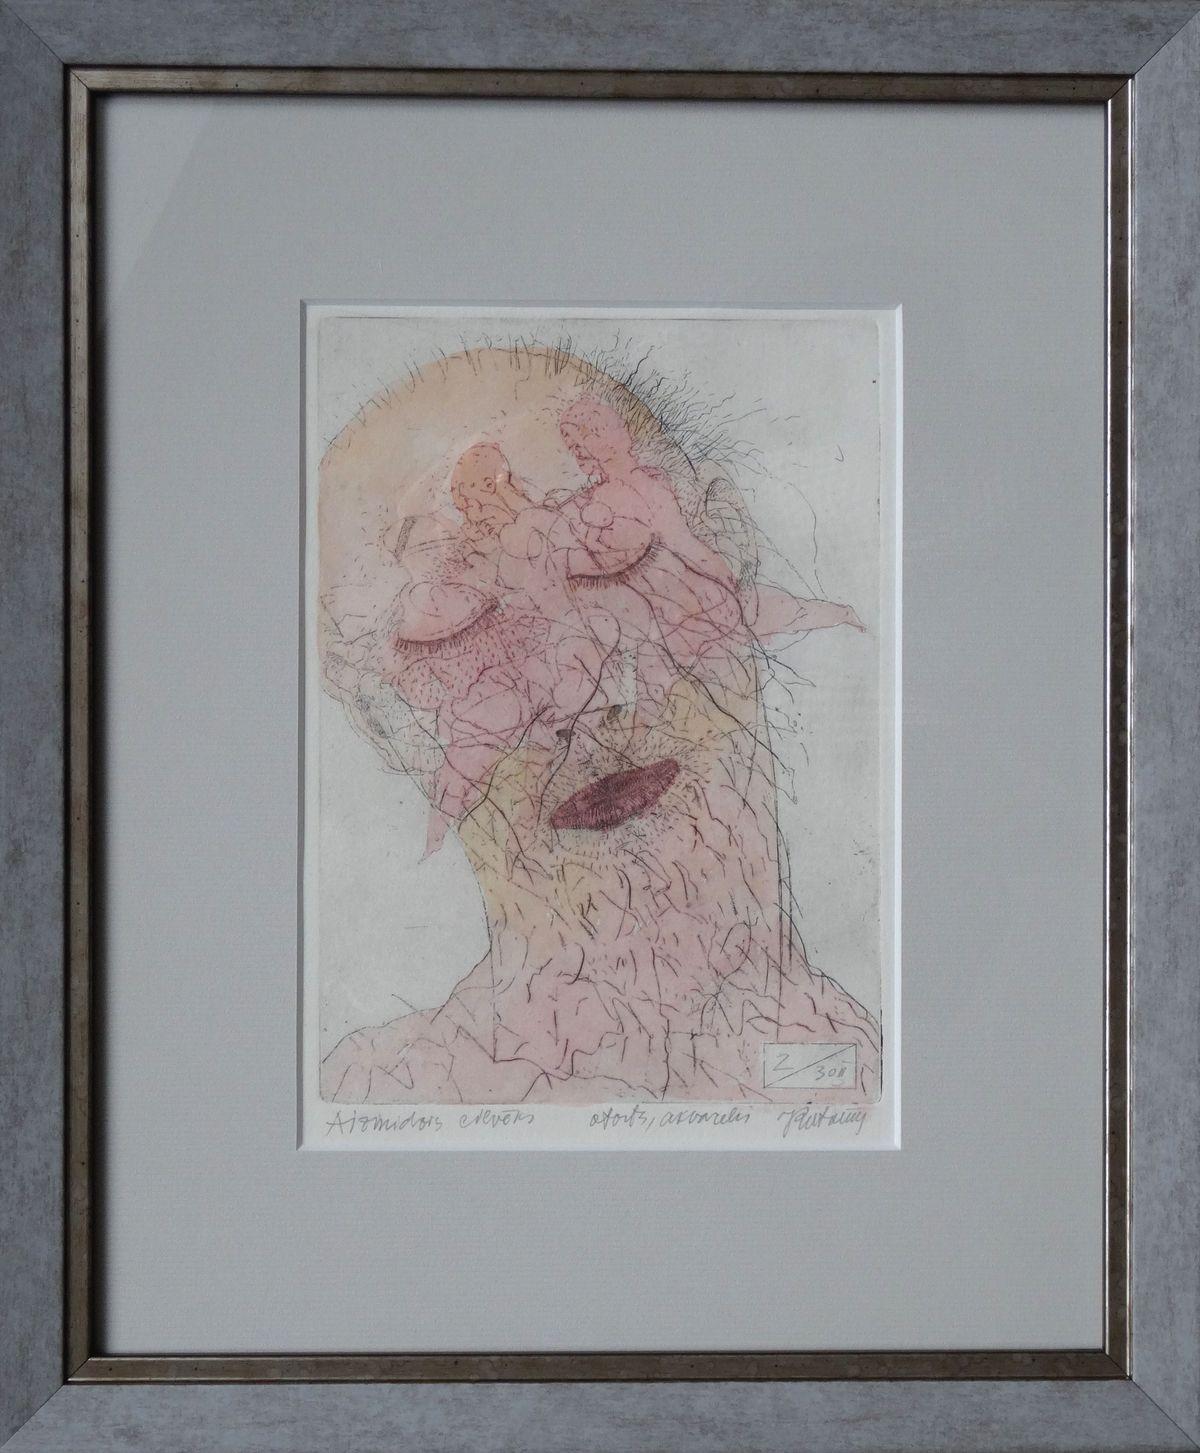 Sleeping man. Paper, etching, watercolor, 19x13 cm - Print by Juris Putrams 